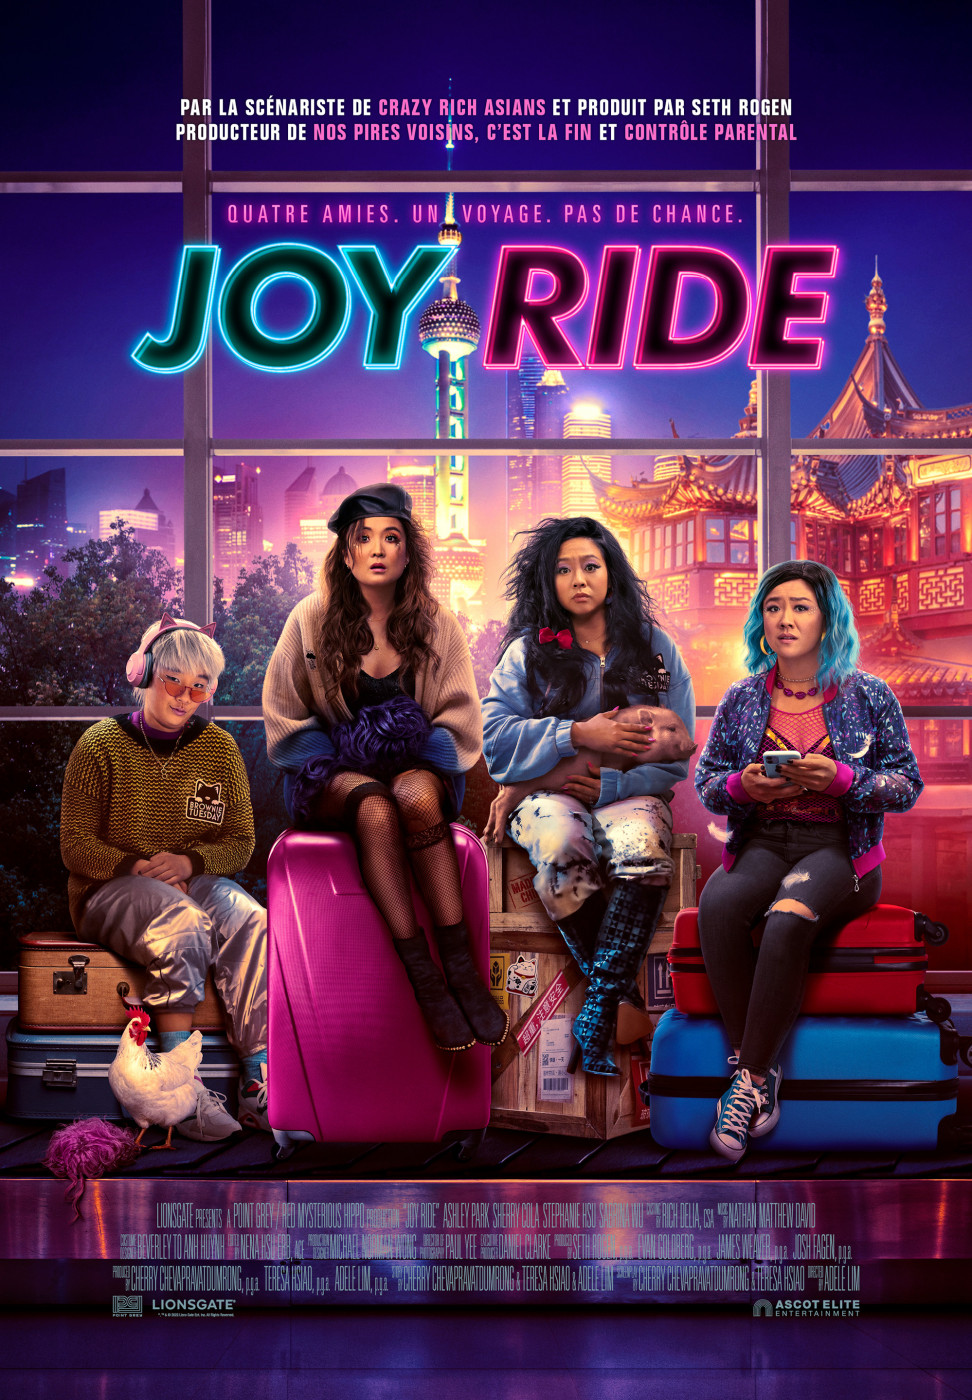 Joy Ride Artwork chf 01 Teaser F 705x1015 4f